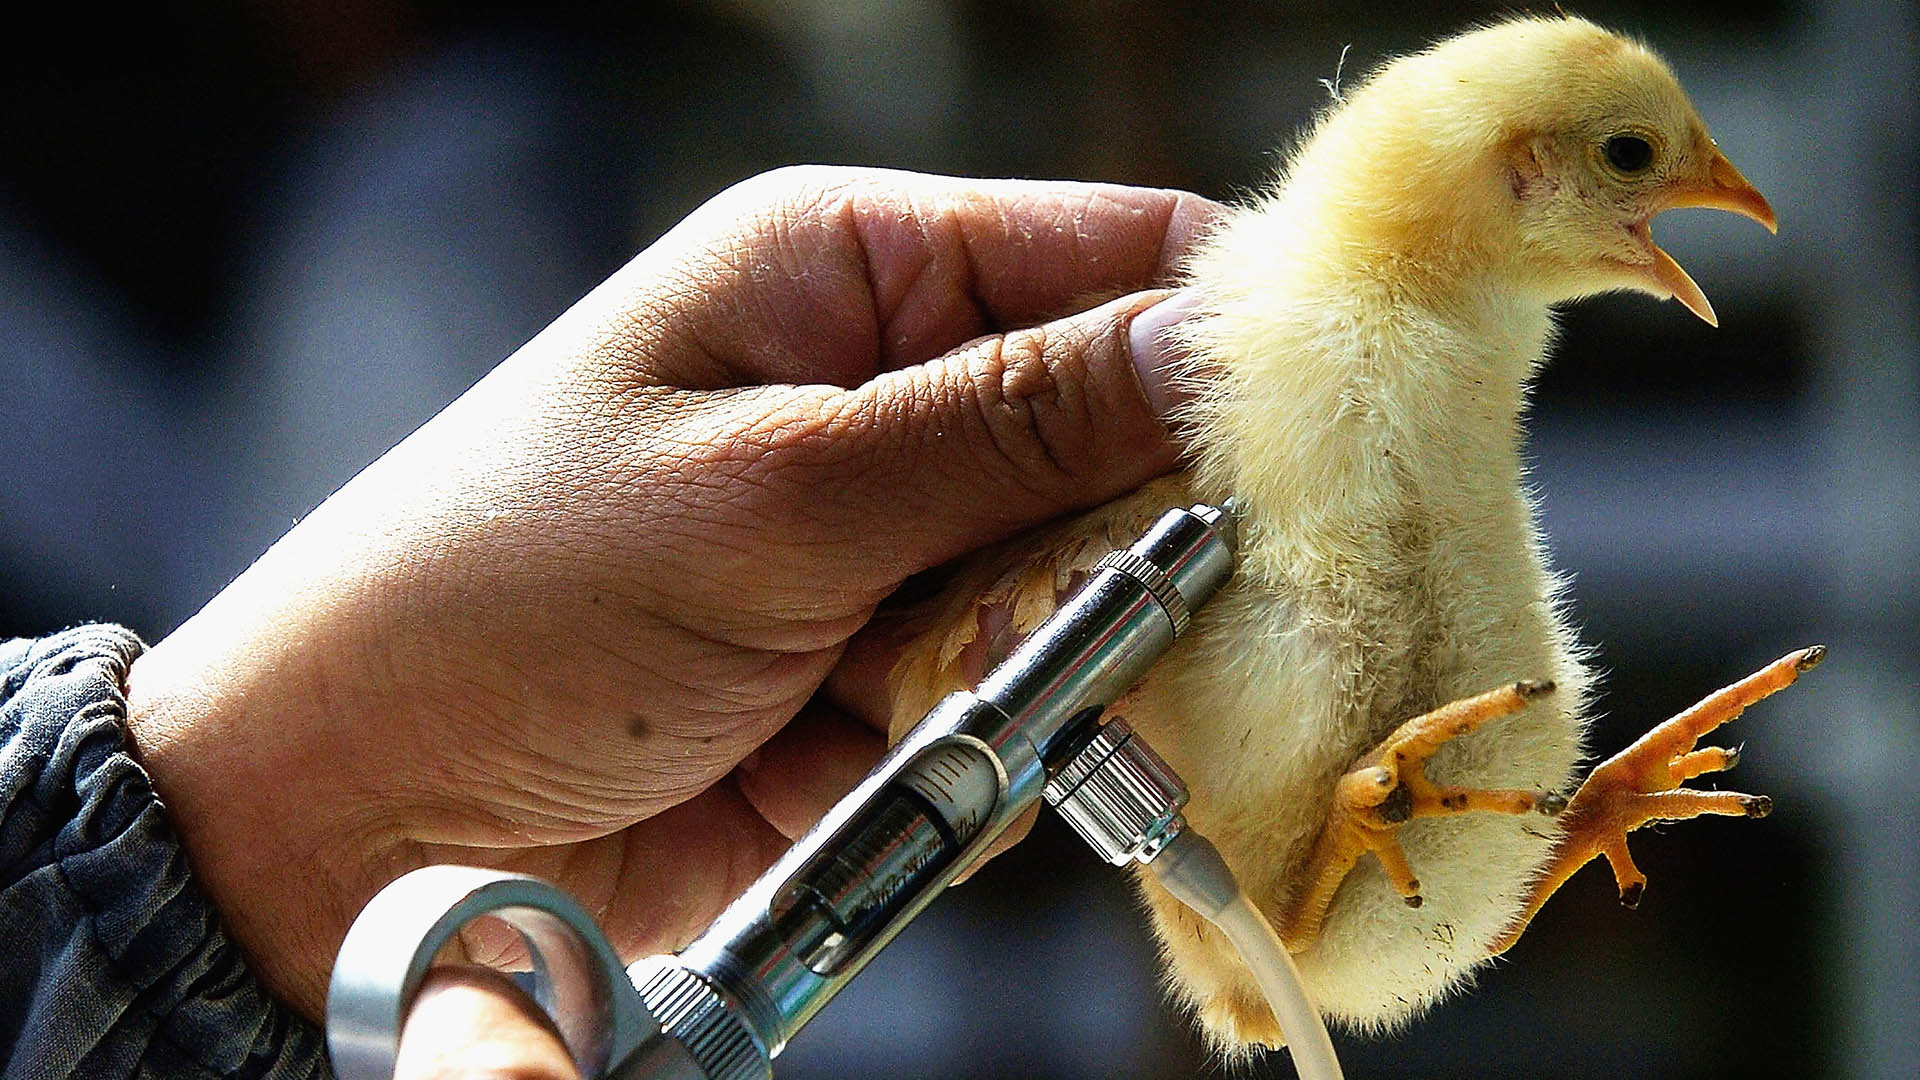 Las autoridades recomendaron que quienes trabajan con aves se vacunen contr ala gripe estacional para reducir el riesgo (Getty)